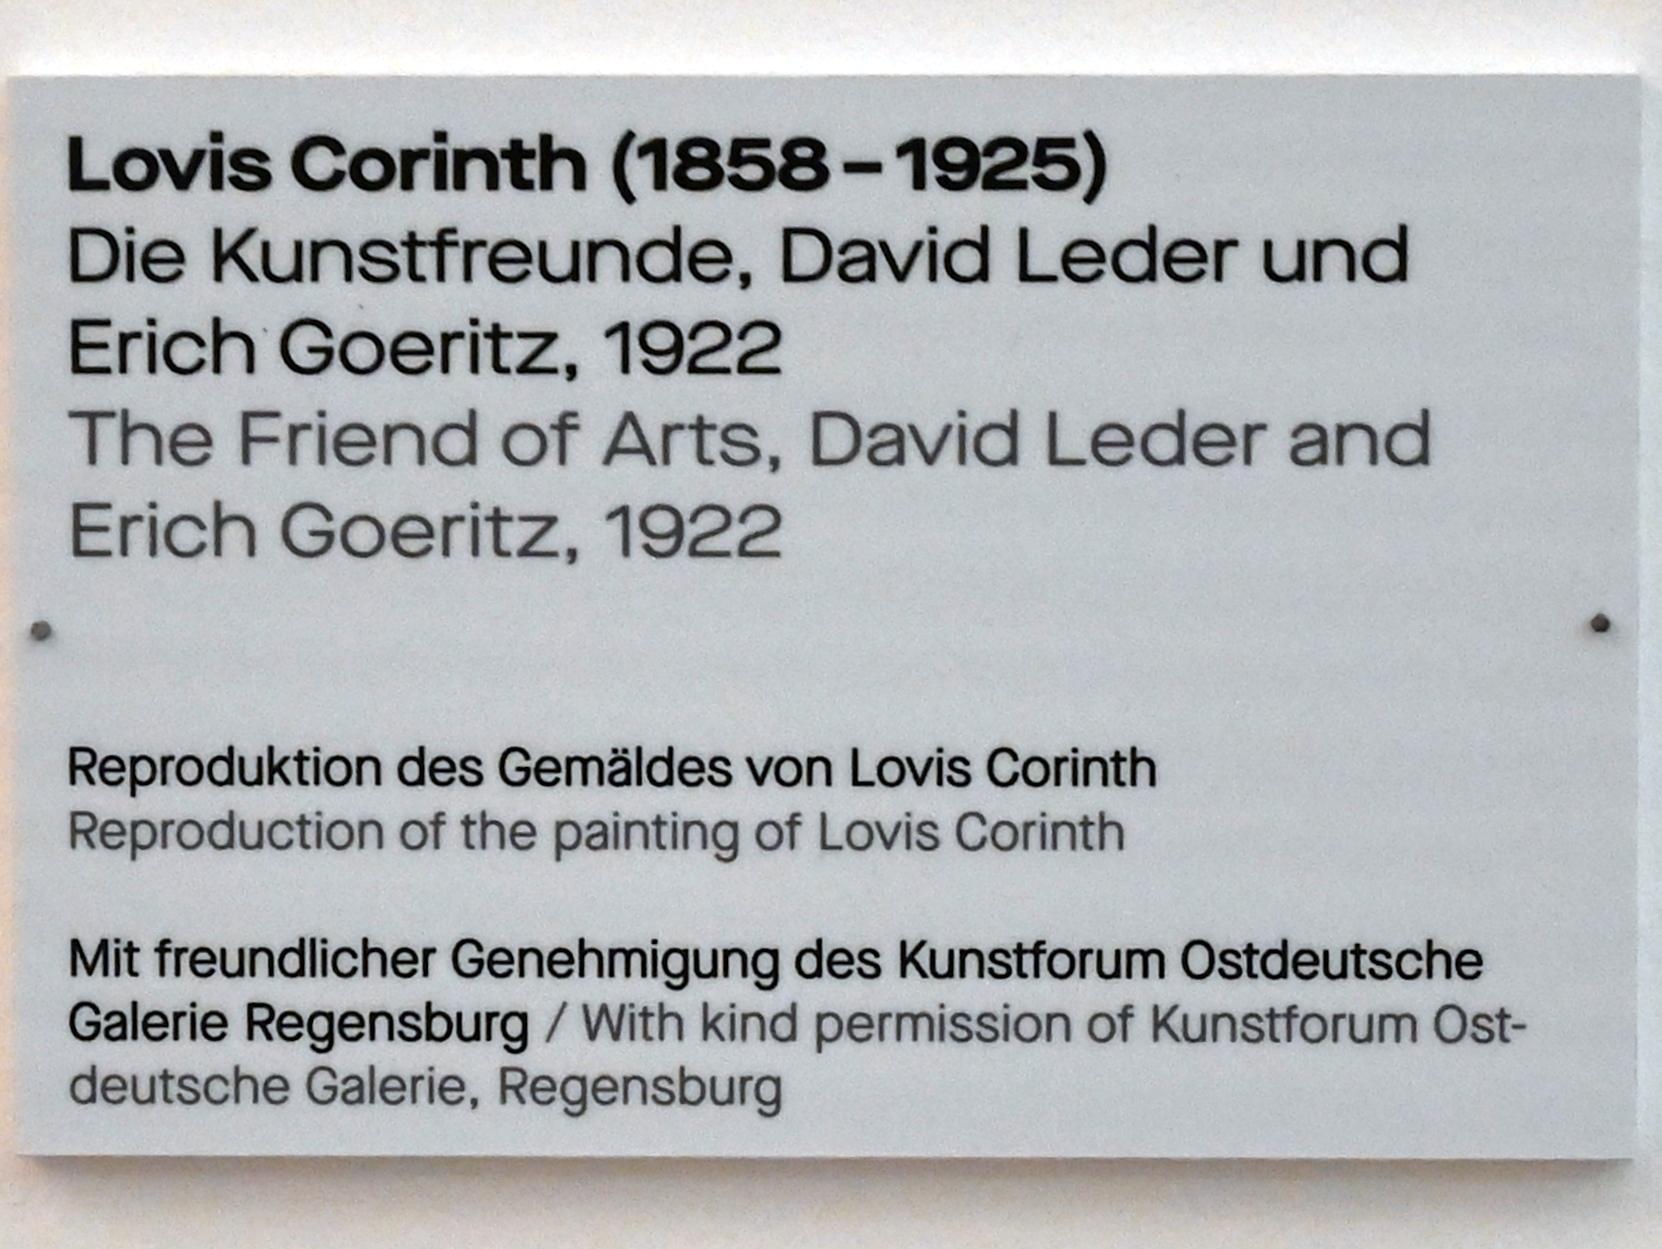 Lovis Corinth (1891–1925), Die Kunstfreunde, David Leder und Erich Goeritz (Replik), Chemnitz, Kunstsammlungen am Theaterplatz, Saal 1, 1922, Bild 2/2